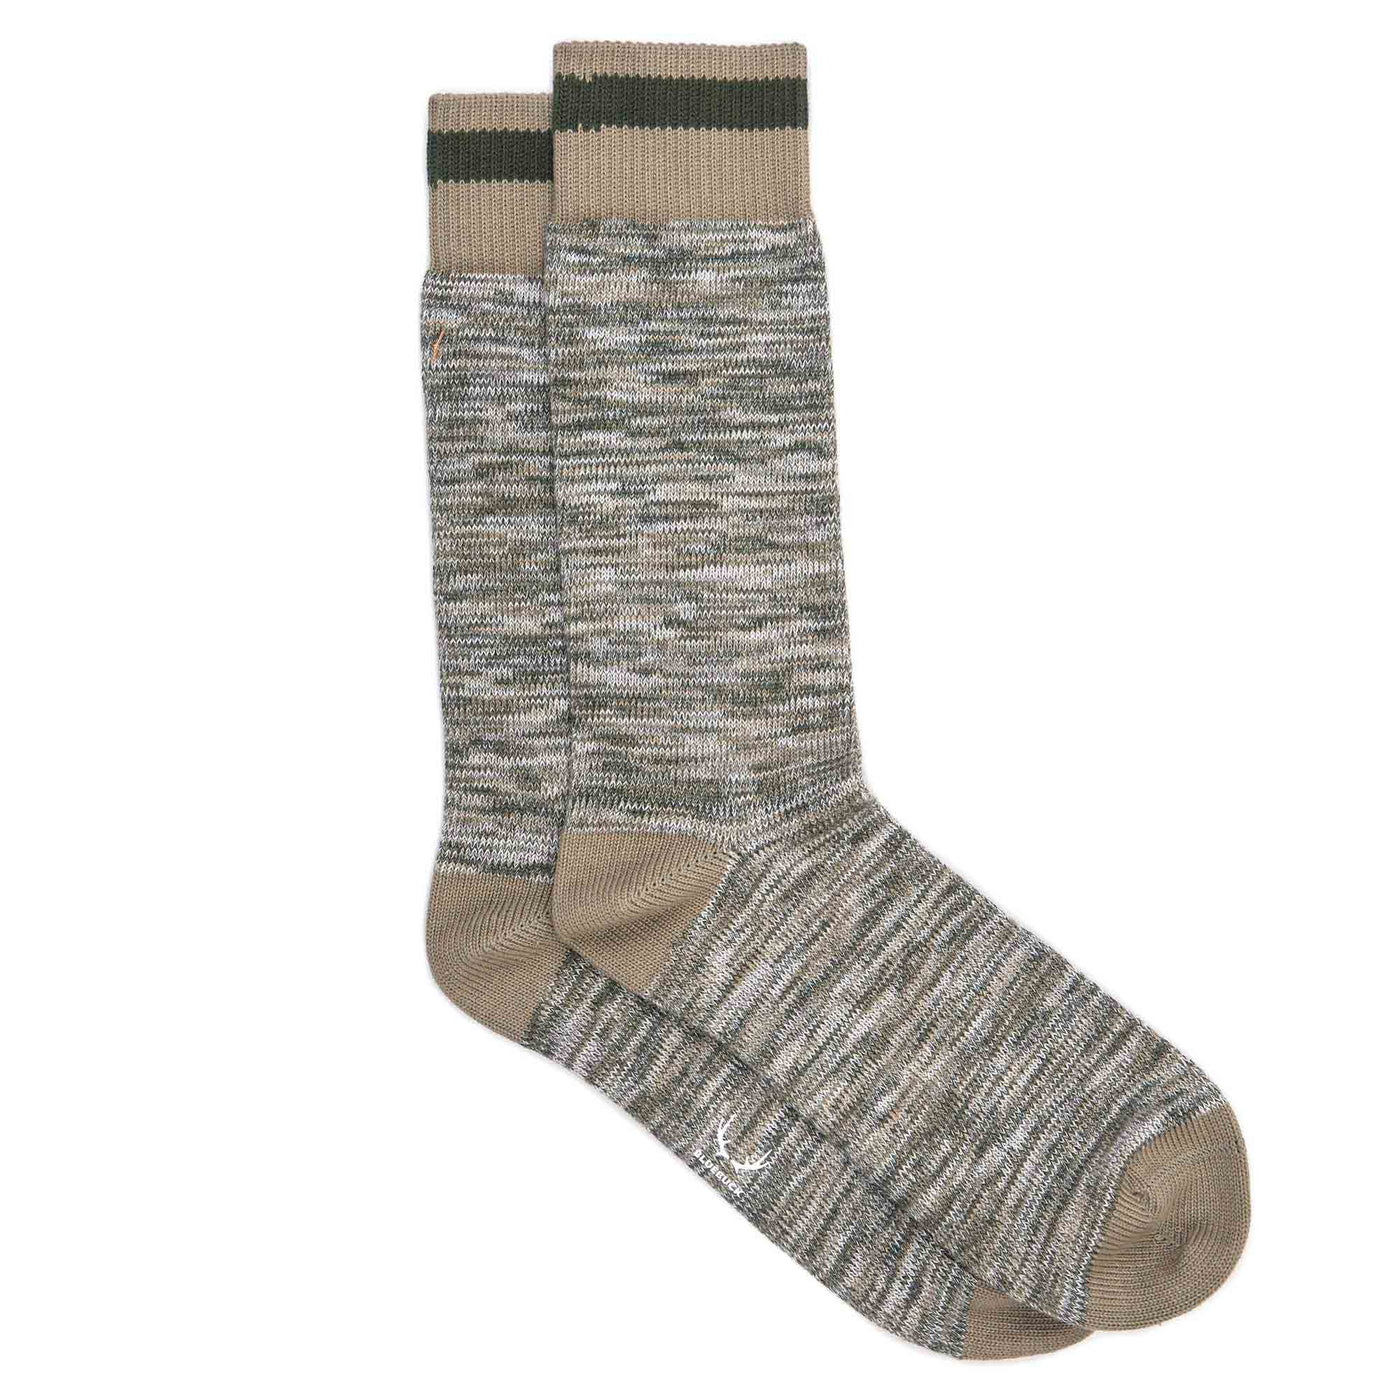 Khaki organic cotton men's socks